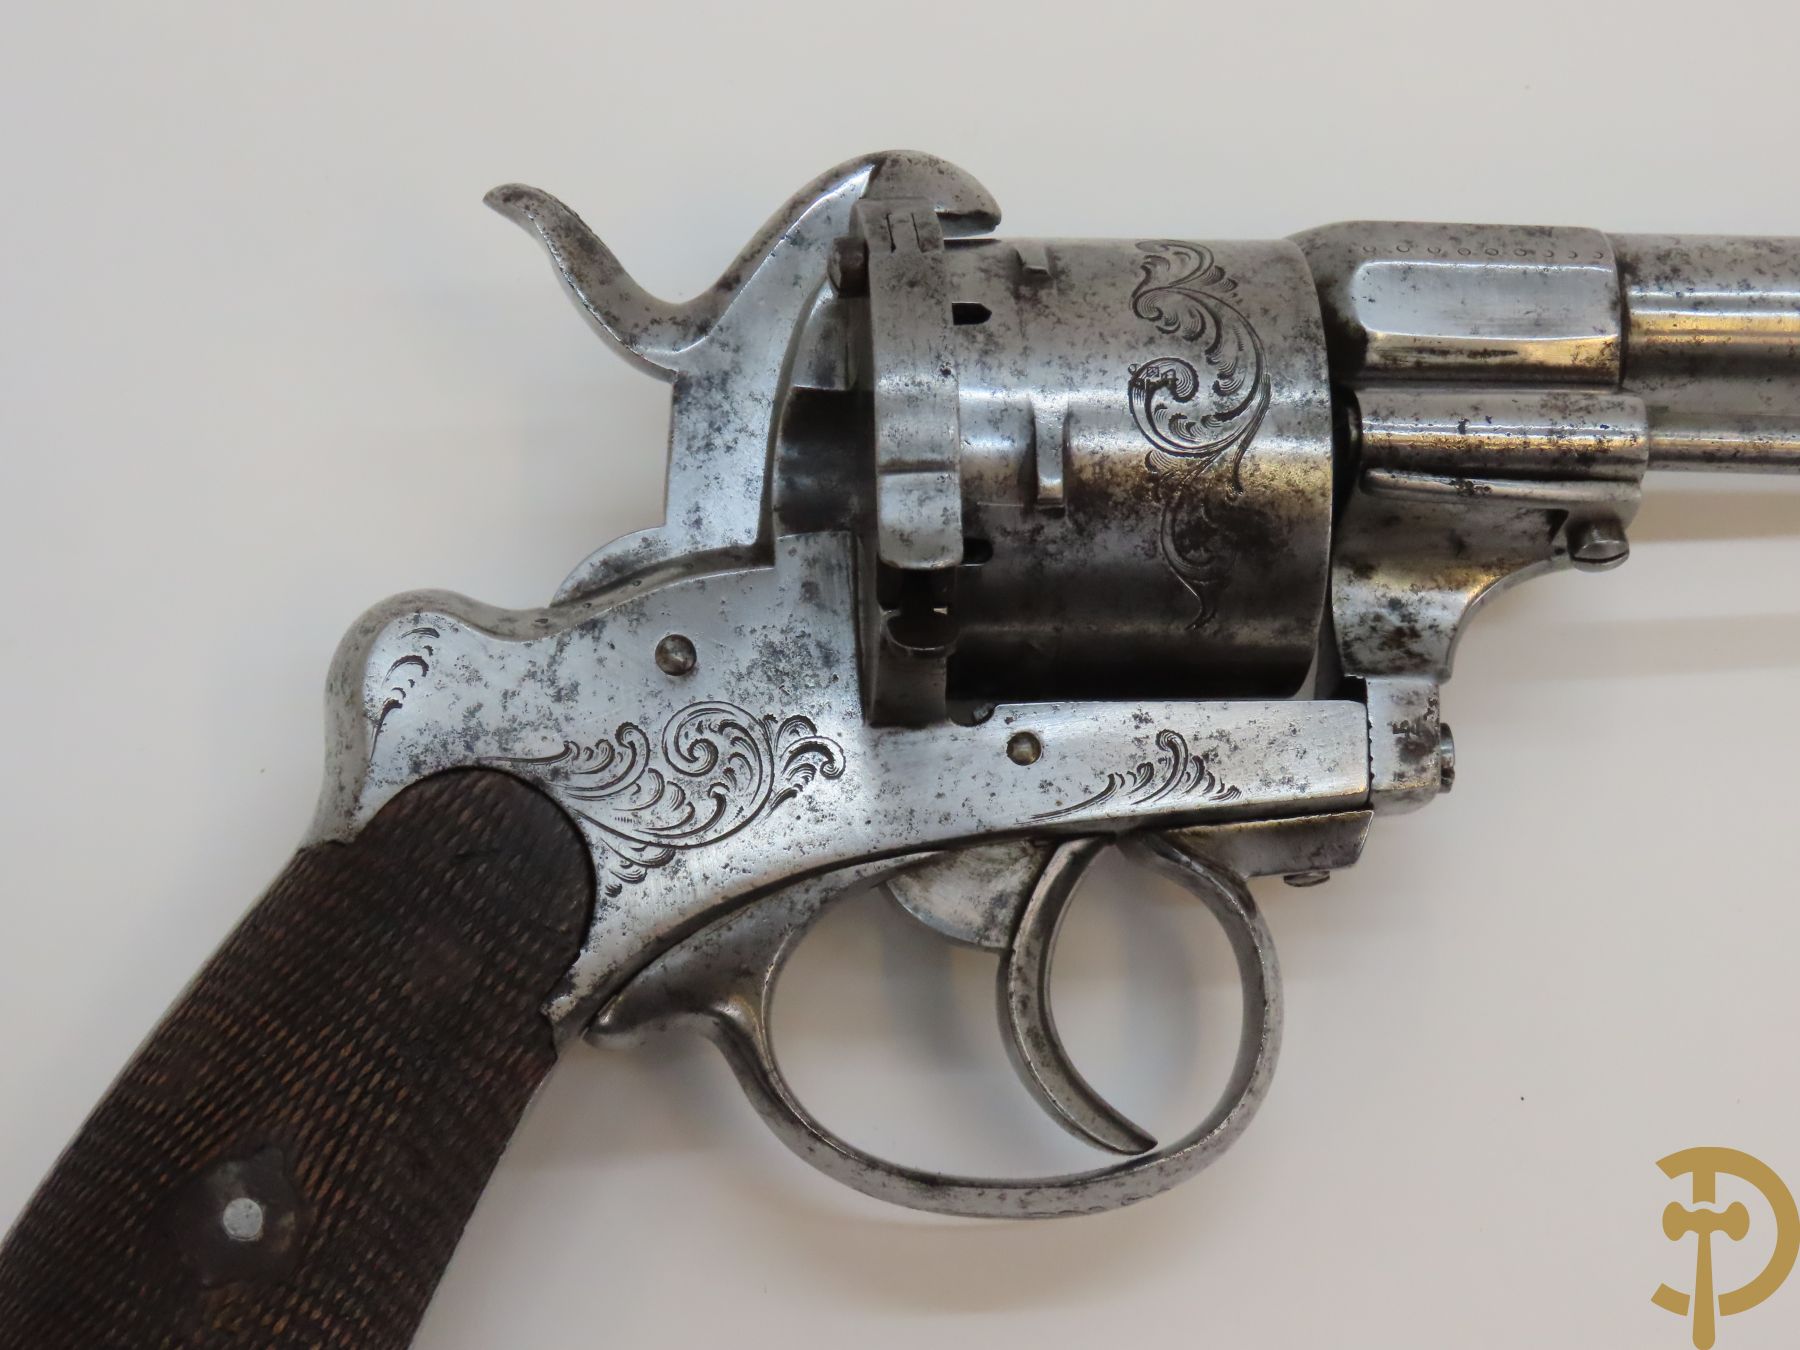 Grote Franse revolver, Lefaucheux E. getekend